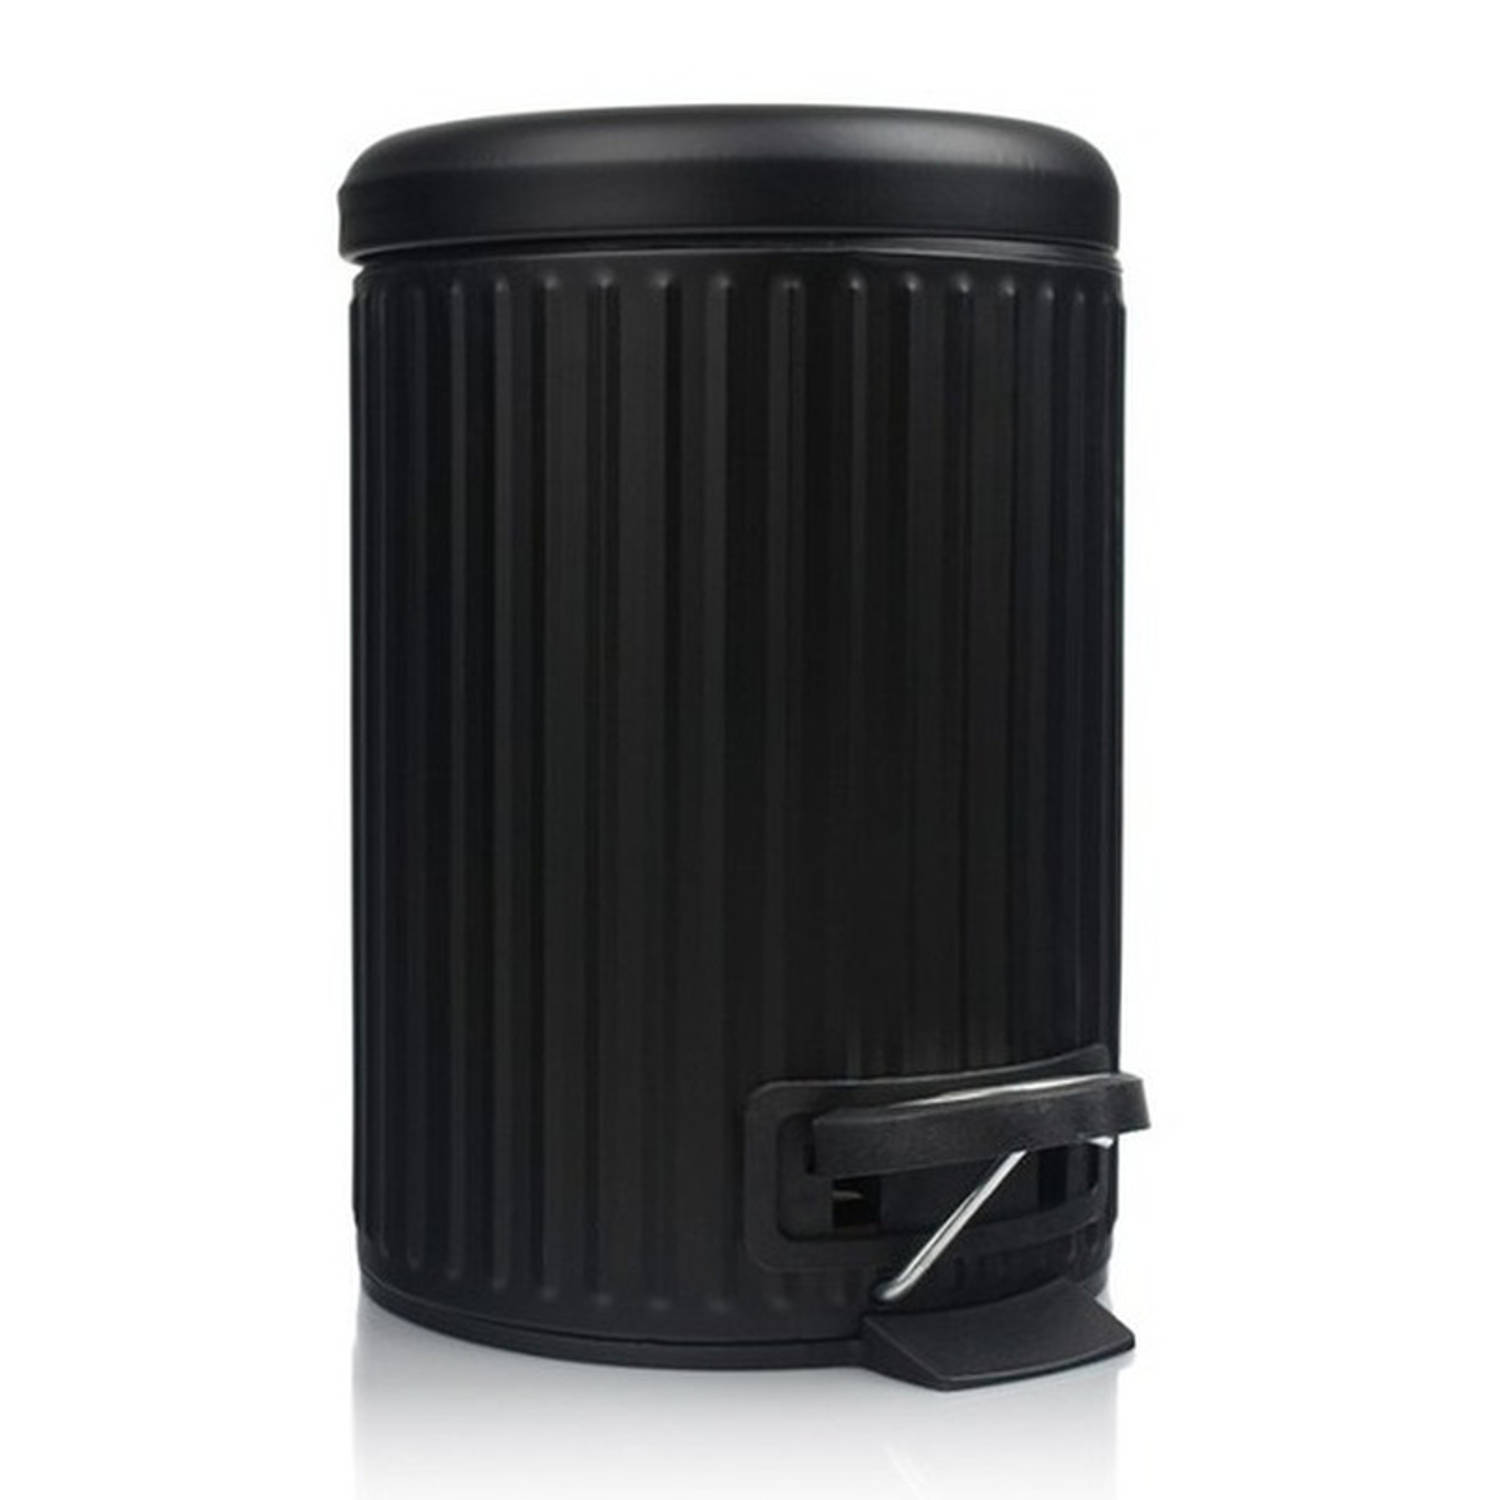 Pedaalemmer-vuilnisbak 3 Liter Zwart Kleur